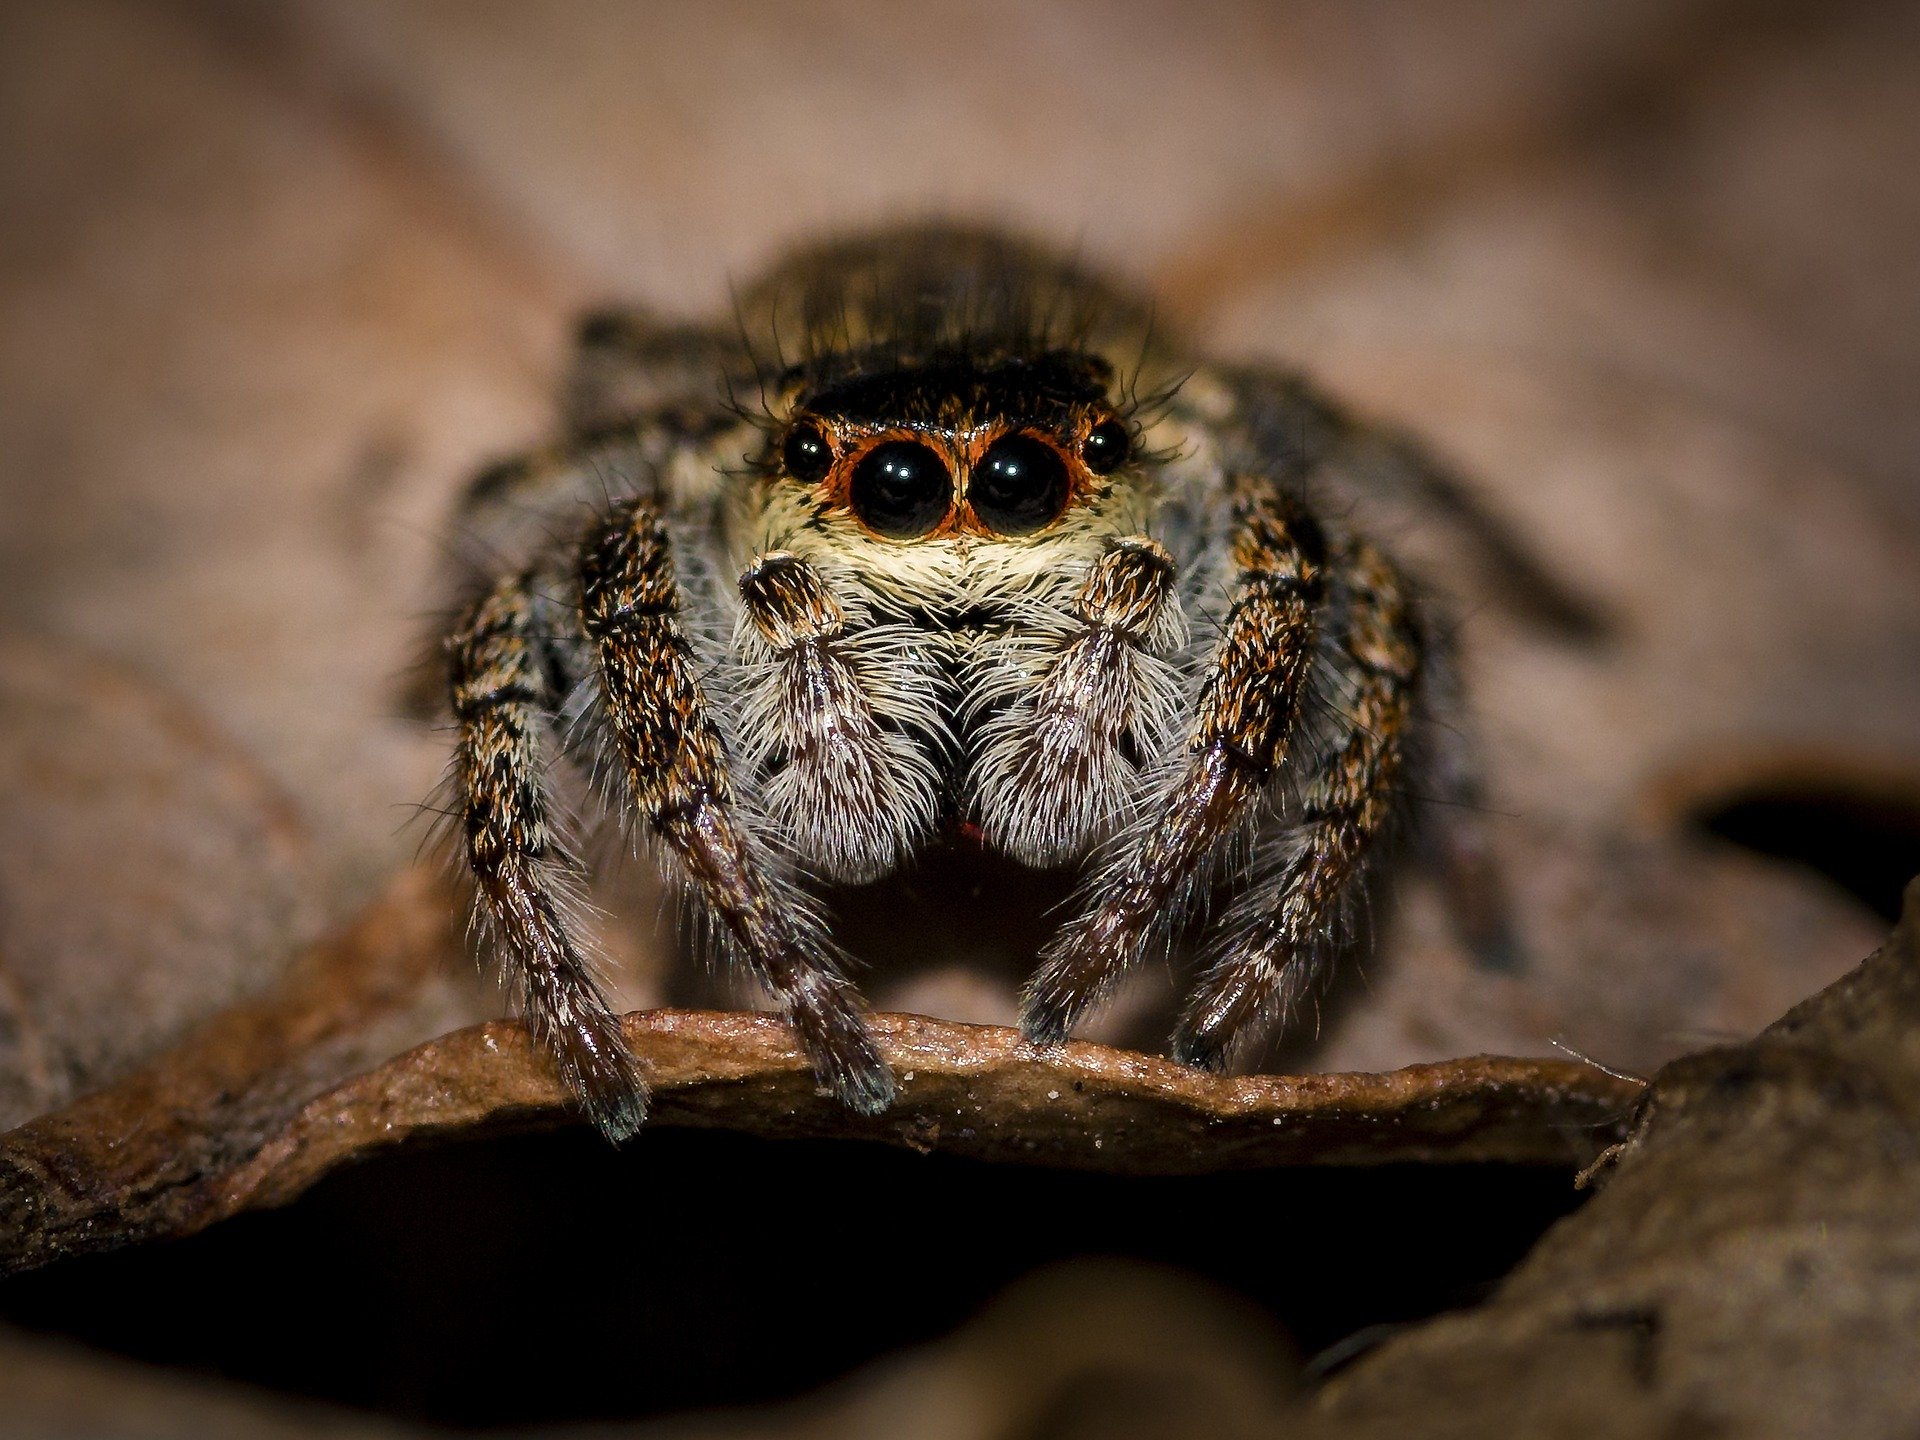 Überleben Spinnen den Staubsauger?